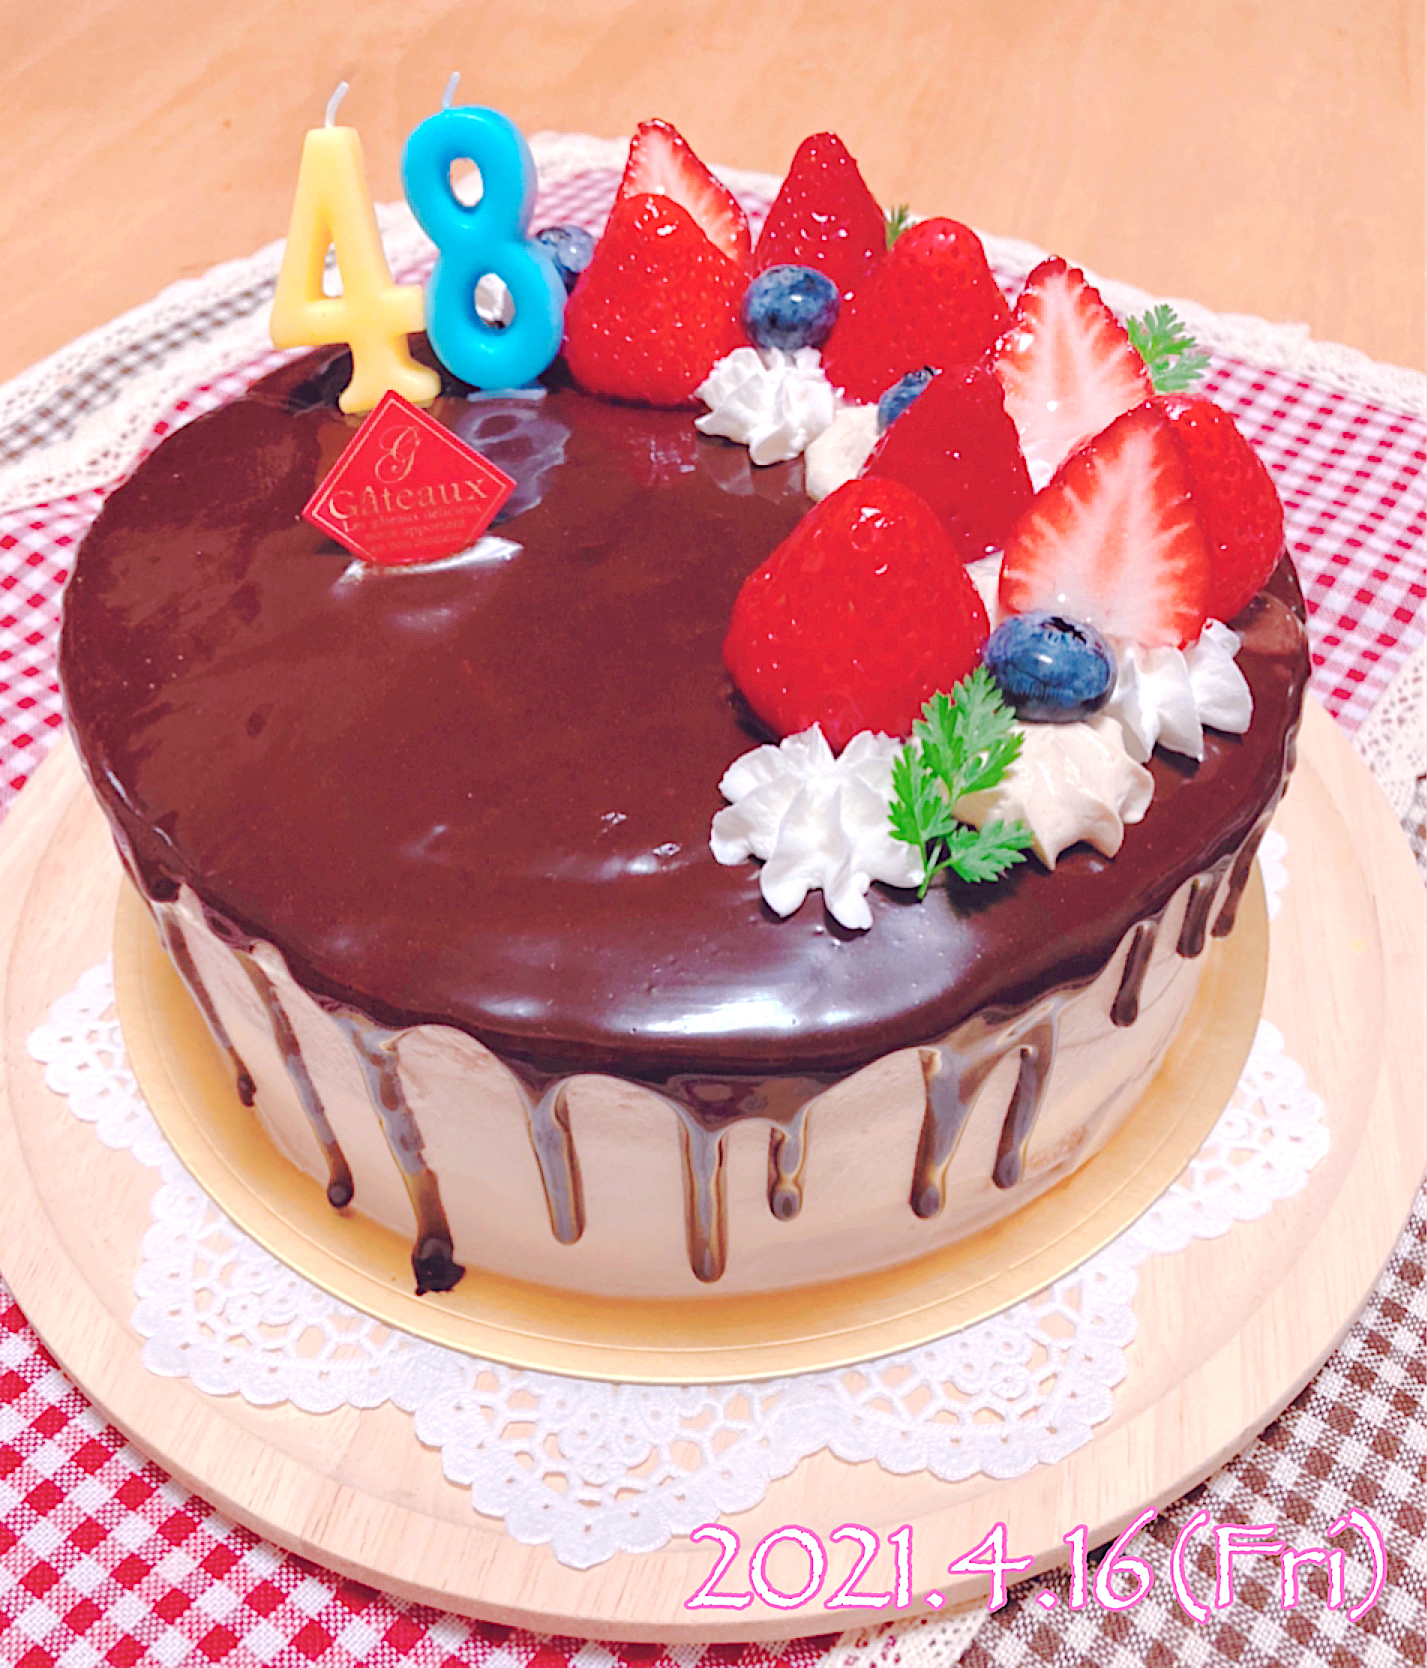 お誕生日おめでとう旦那さんのために作ったバースデーケーキ Seiko Snapdish スナップディッシュ Id 8dshha